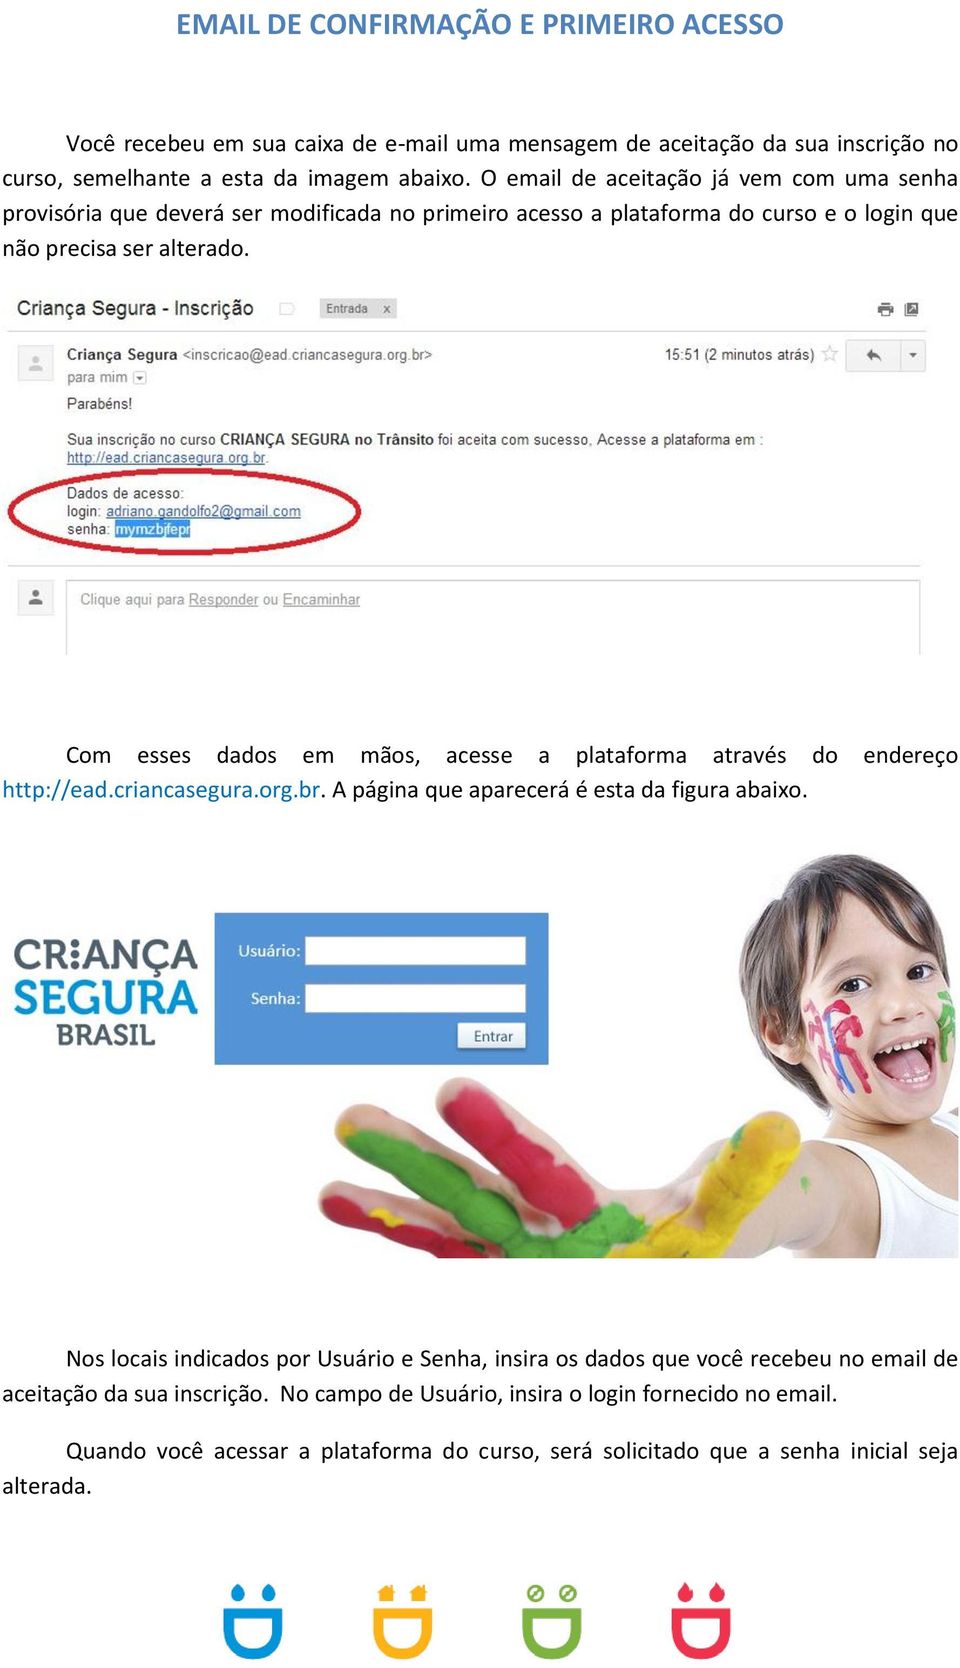 Com esses dados em mãos, acesse a plataforma através do endereço http://ead.criancasegura.org.br. A página que aparecerá é esta da figura abaixo.